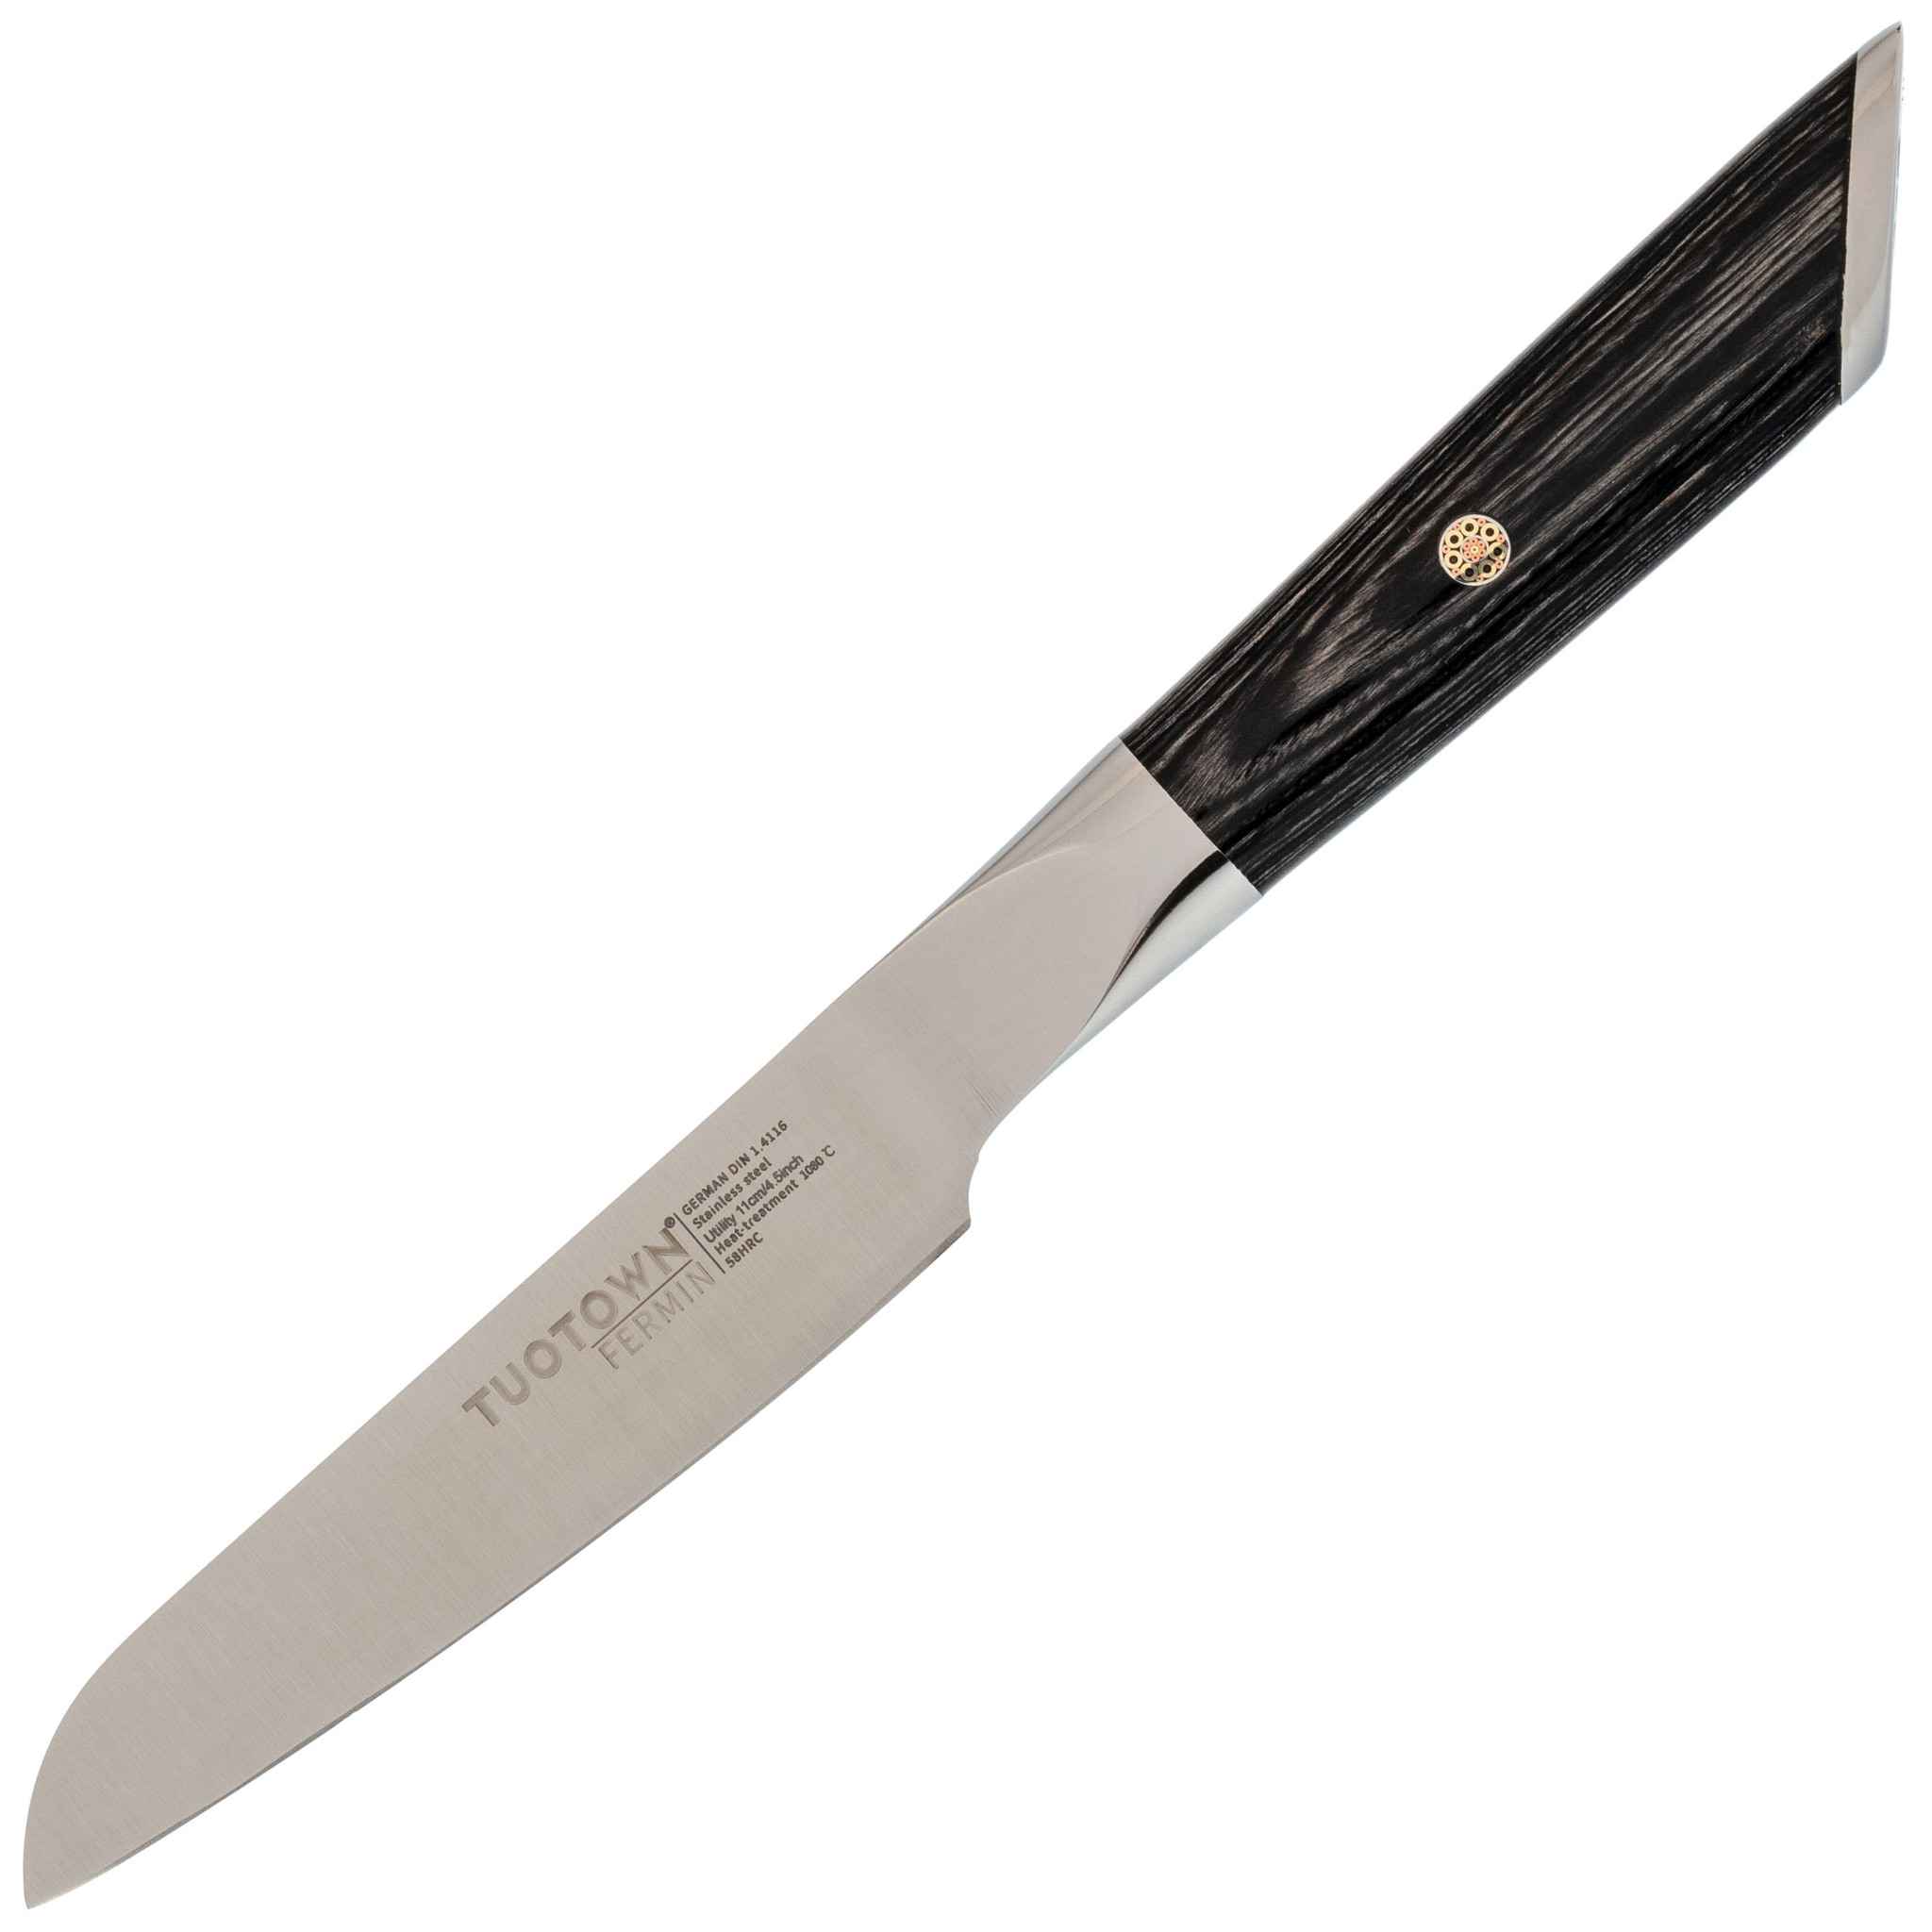 Кухонный нож универсальный, Tuotown серия Fermin, сталь 1.4116, рукоять дерево нож кухонный samura mo v универсальный 125мм